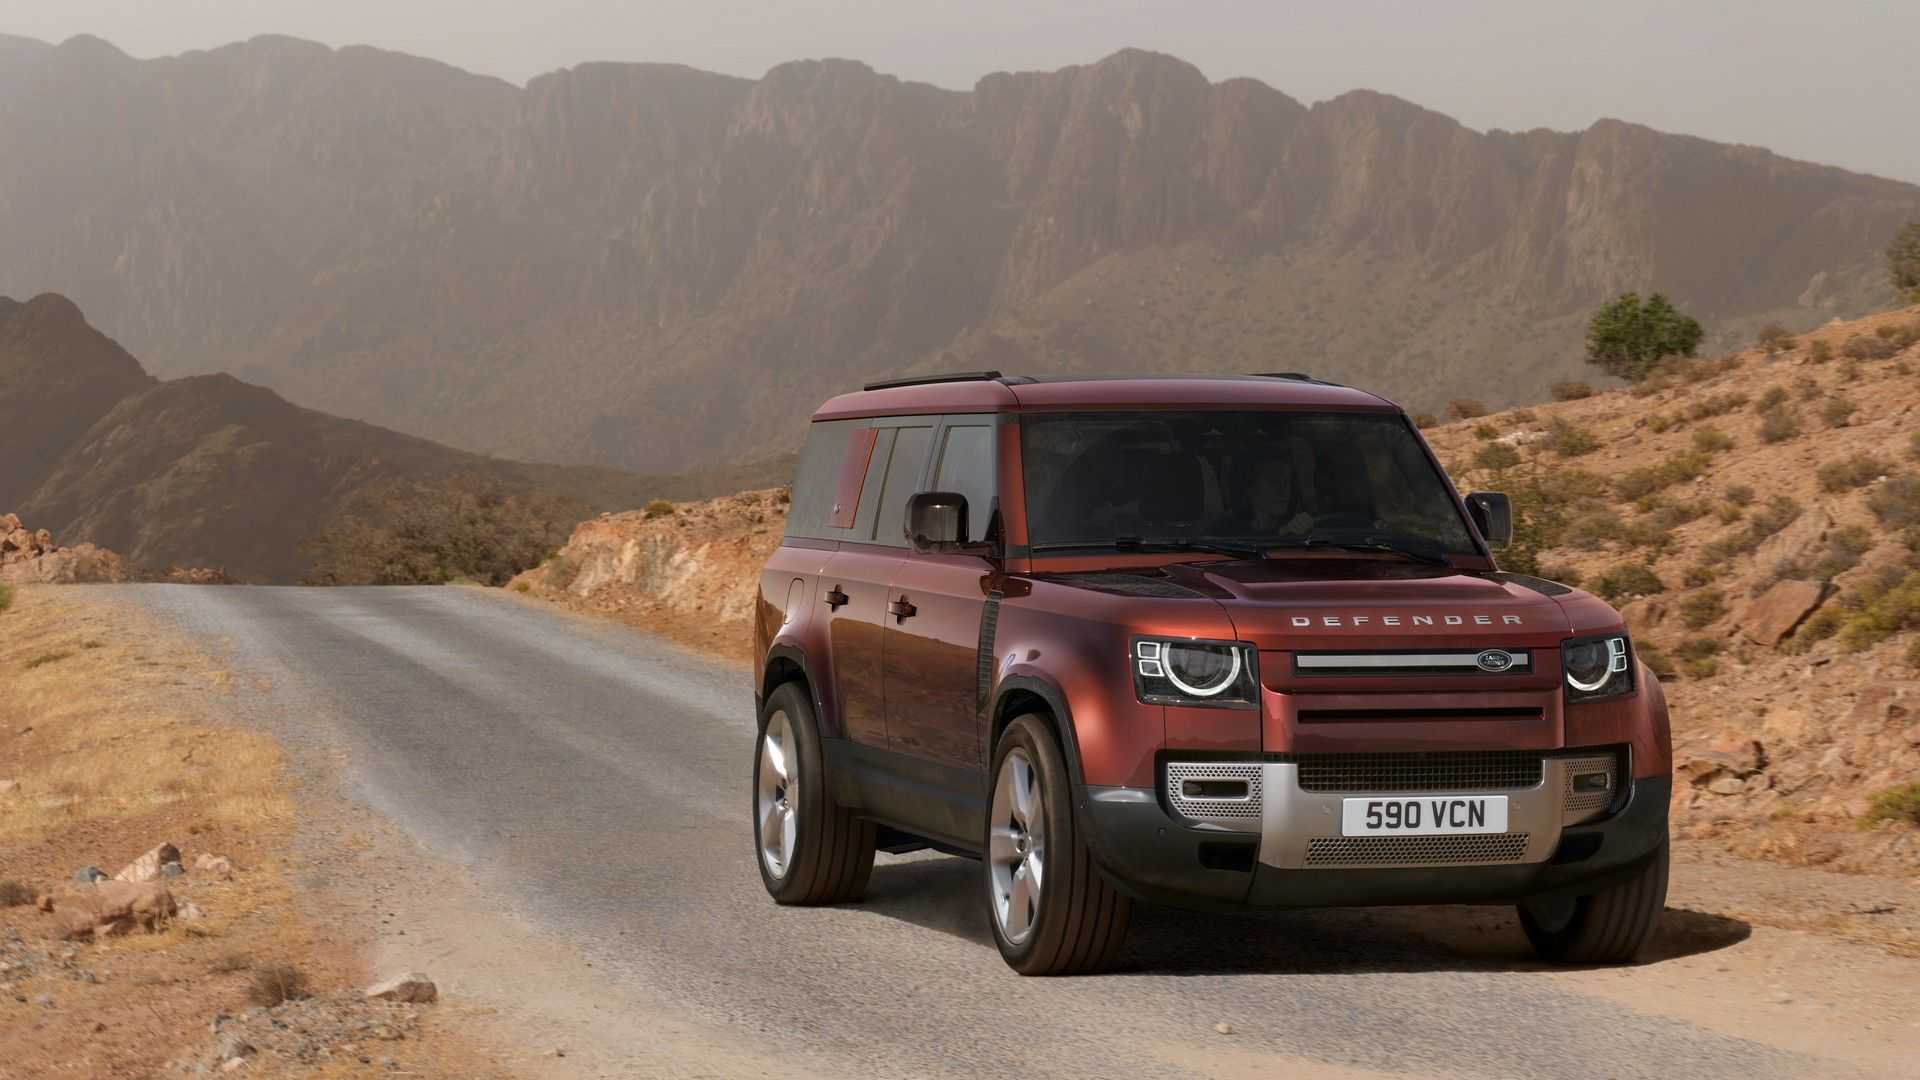 Defender bán quá chạy, Land Rover phải tăng ca sản xuất - Ảnh 2.